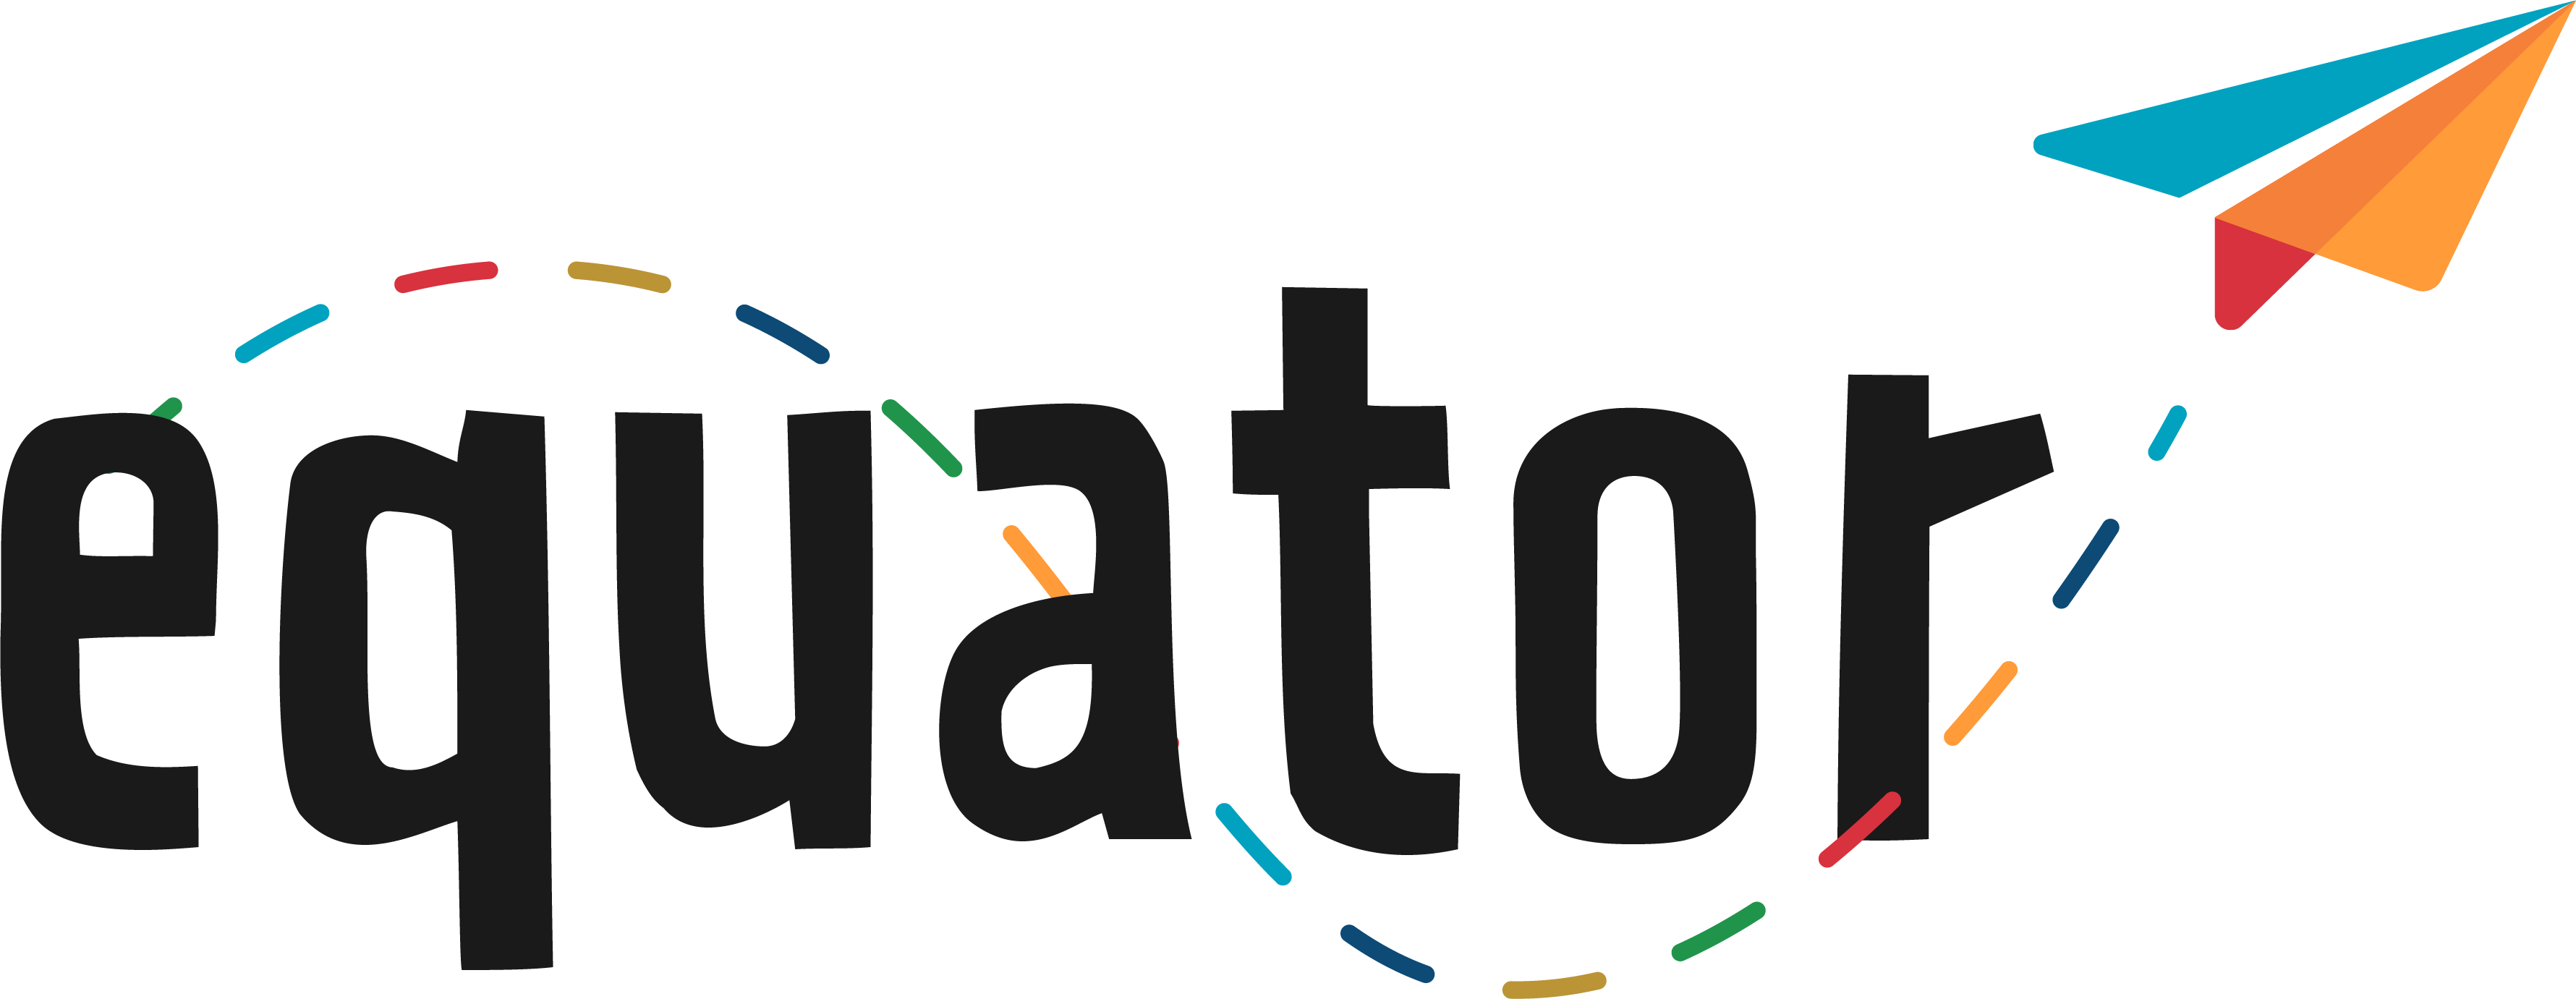 EQUATOR logo